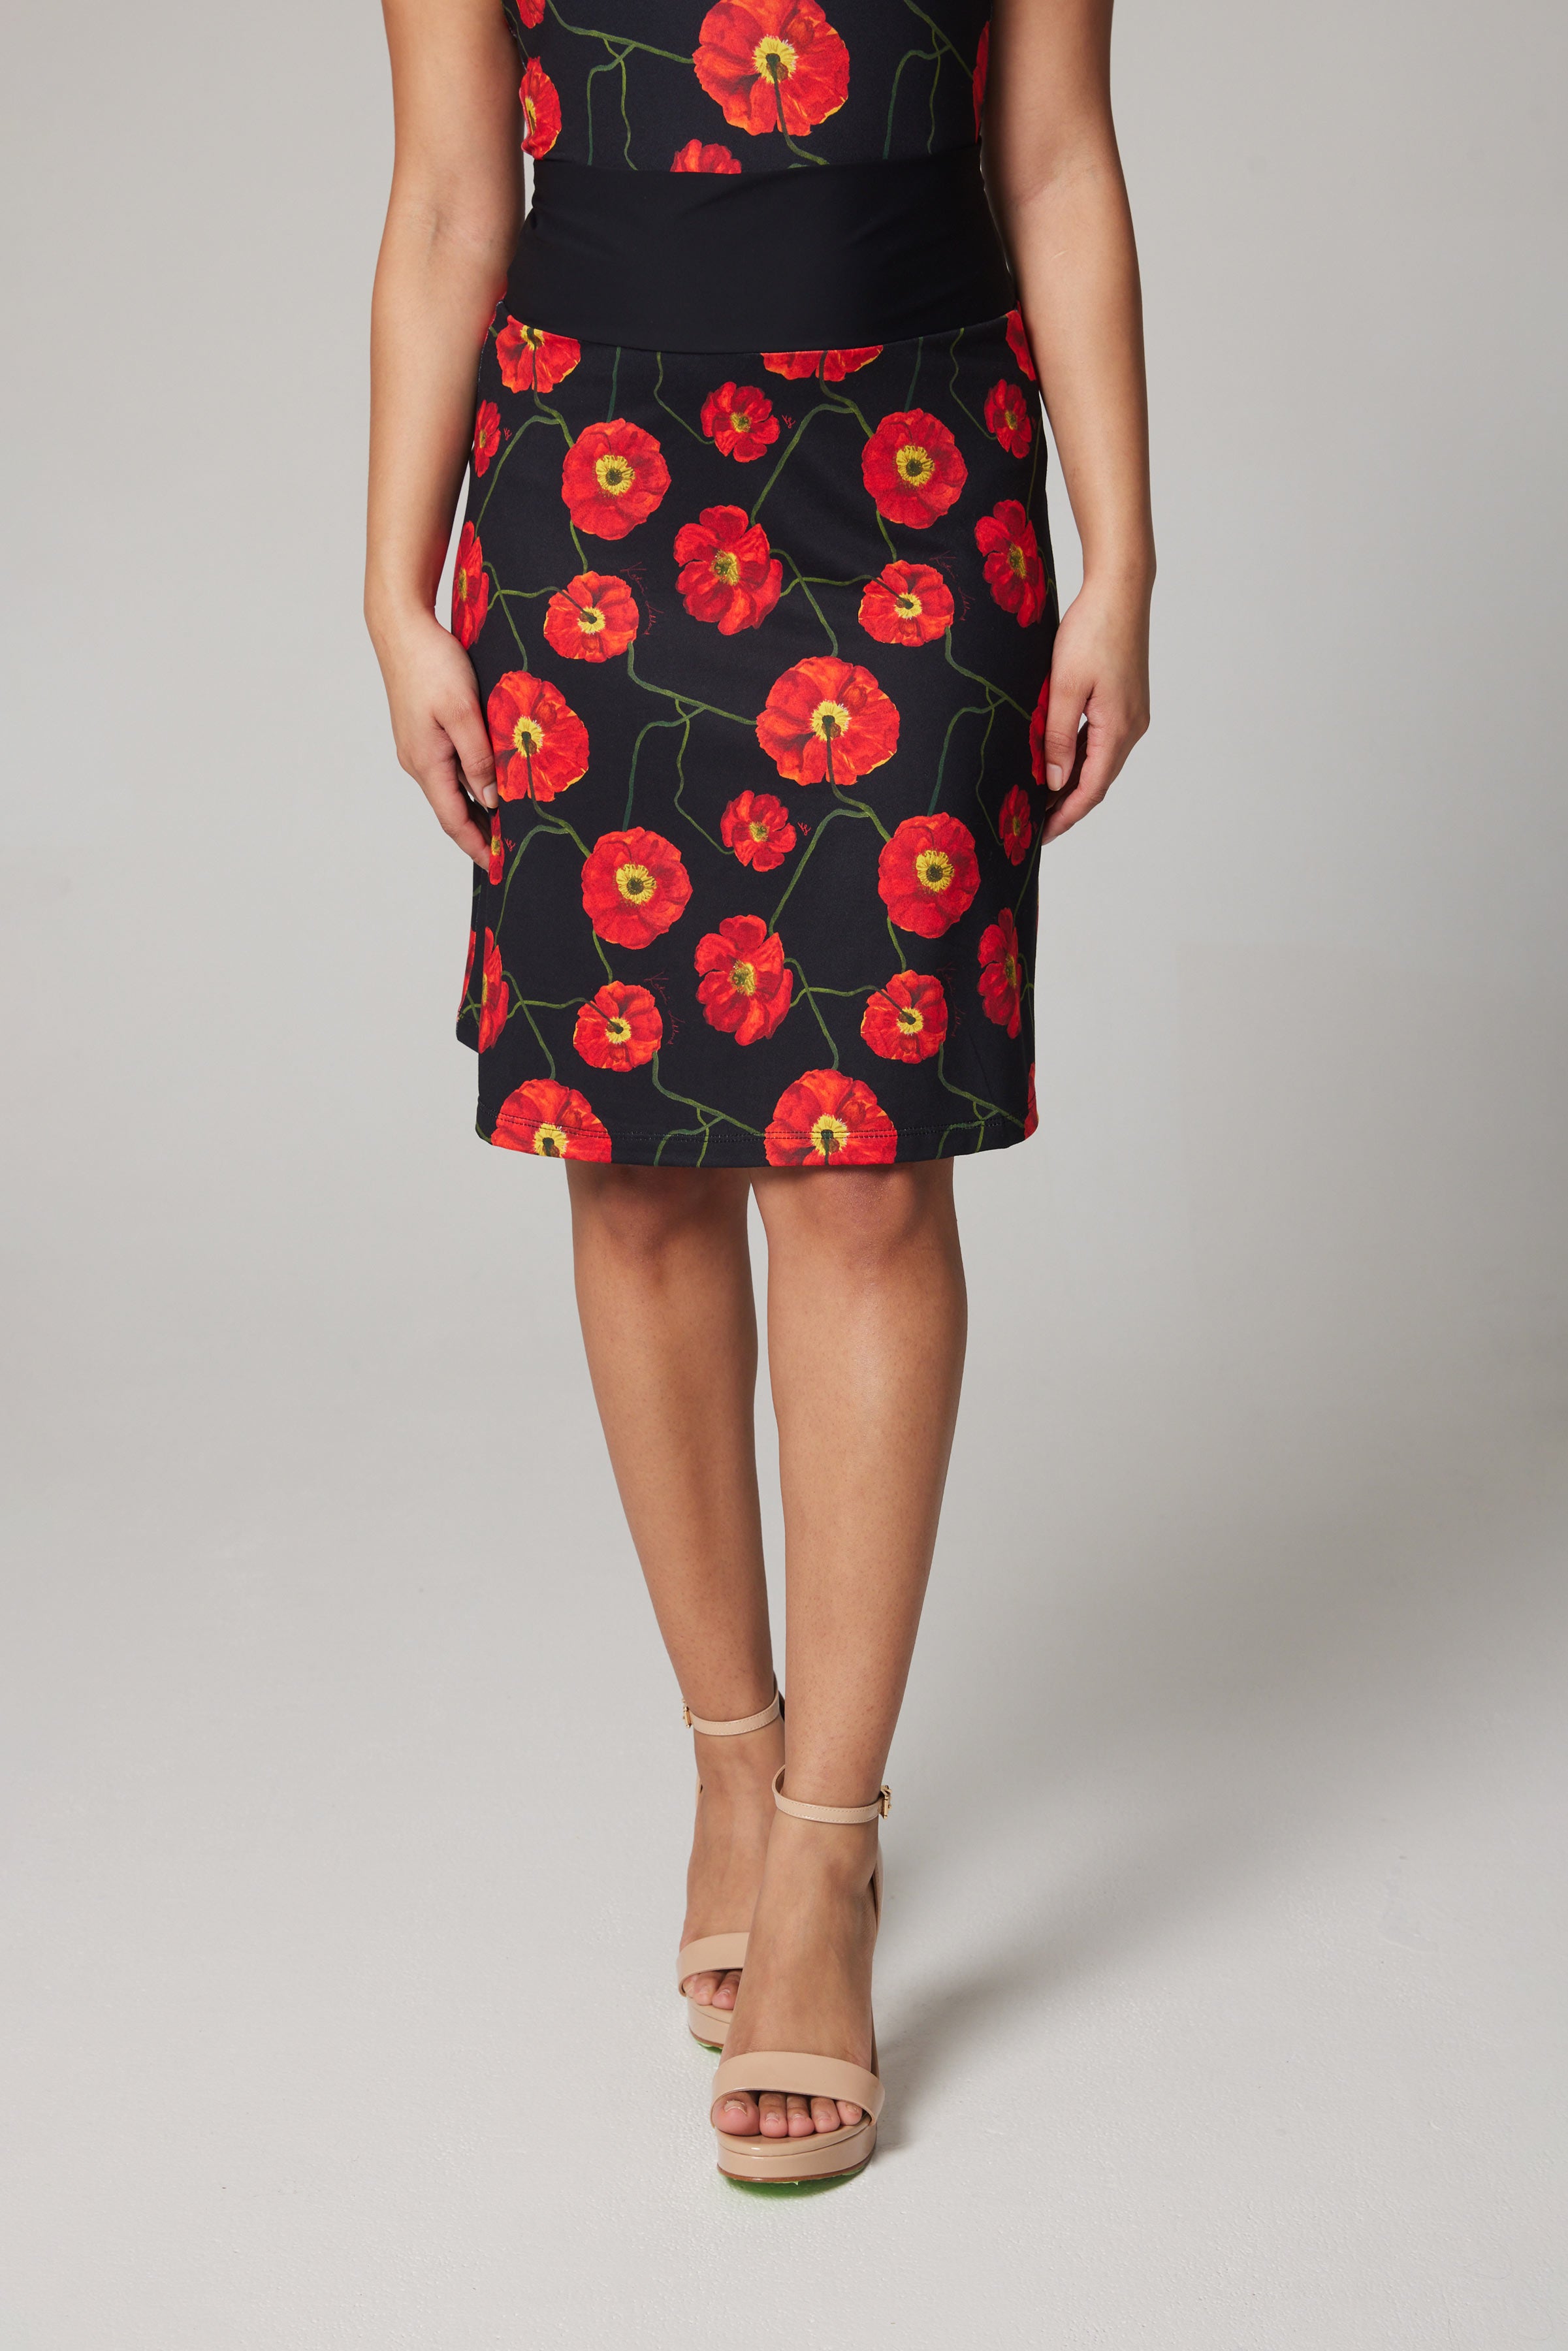 Art Skirt – Poppies